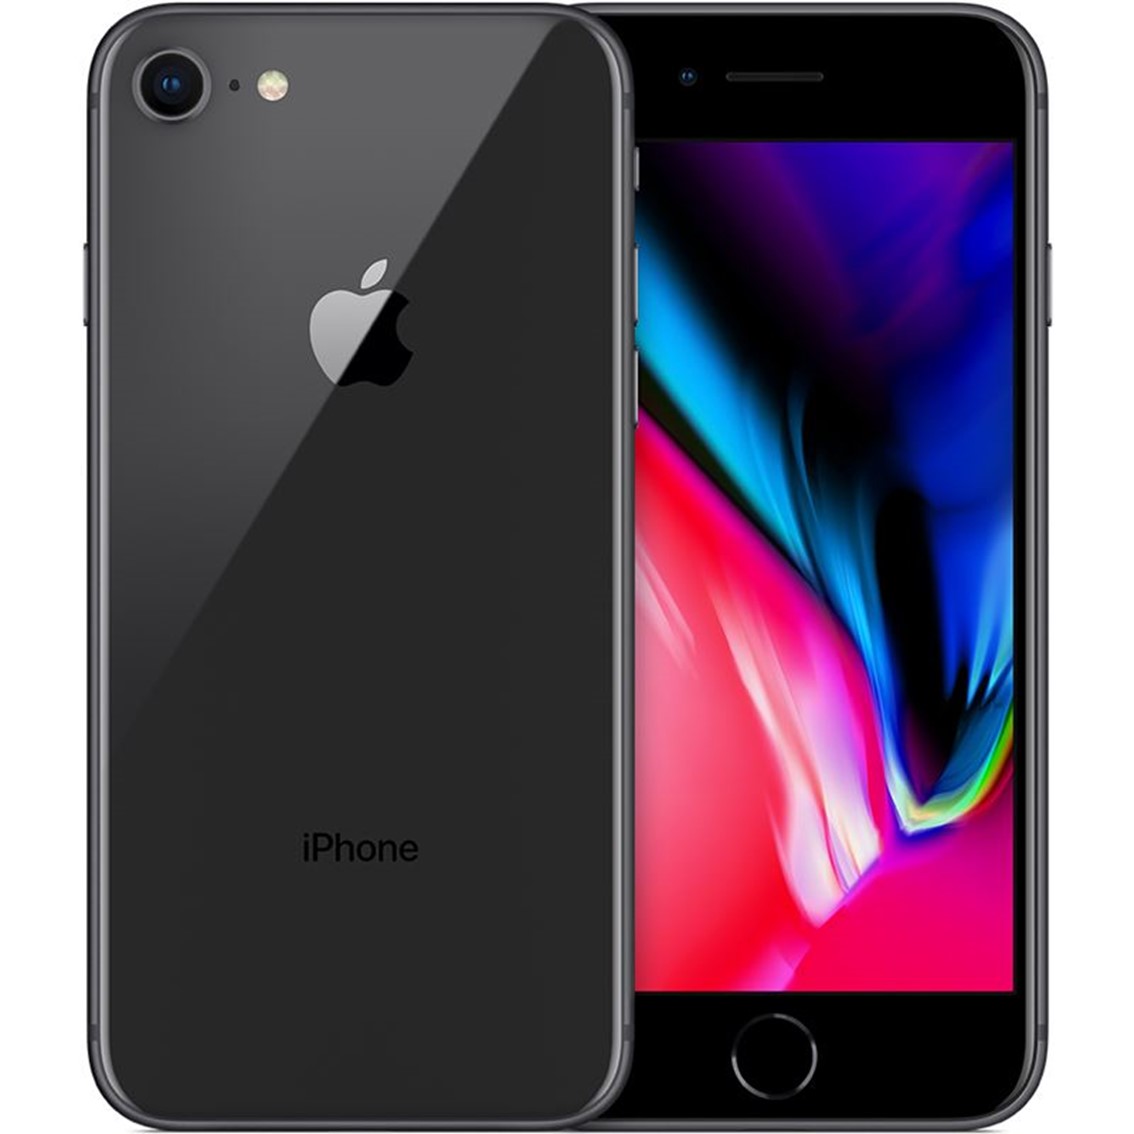 Telefono movil smartphone reware apple iphone 8 256gb space gray - 4.7pulgadas - lector huella - reacondicionado - refurbish - grado a+